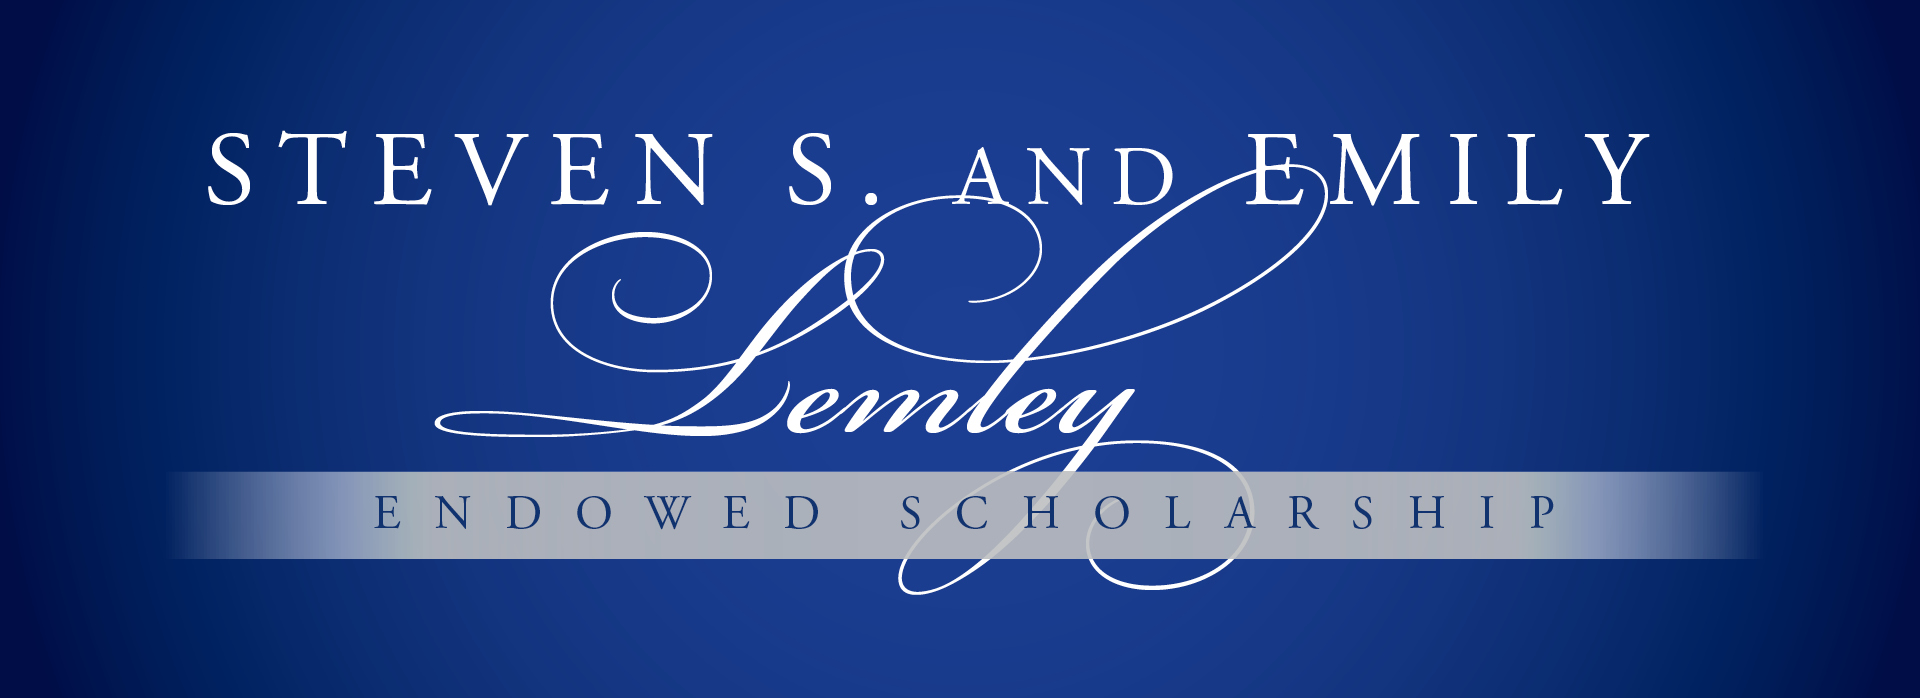 Steven and Emily Scholarship Banner